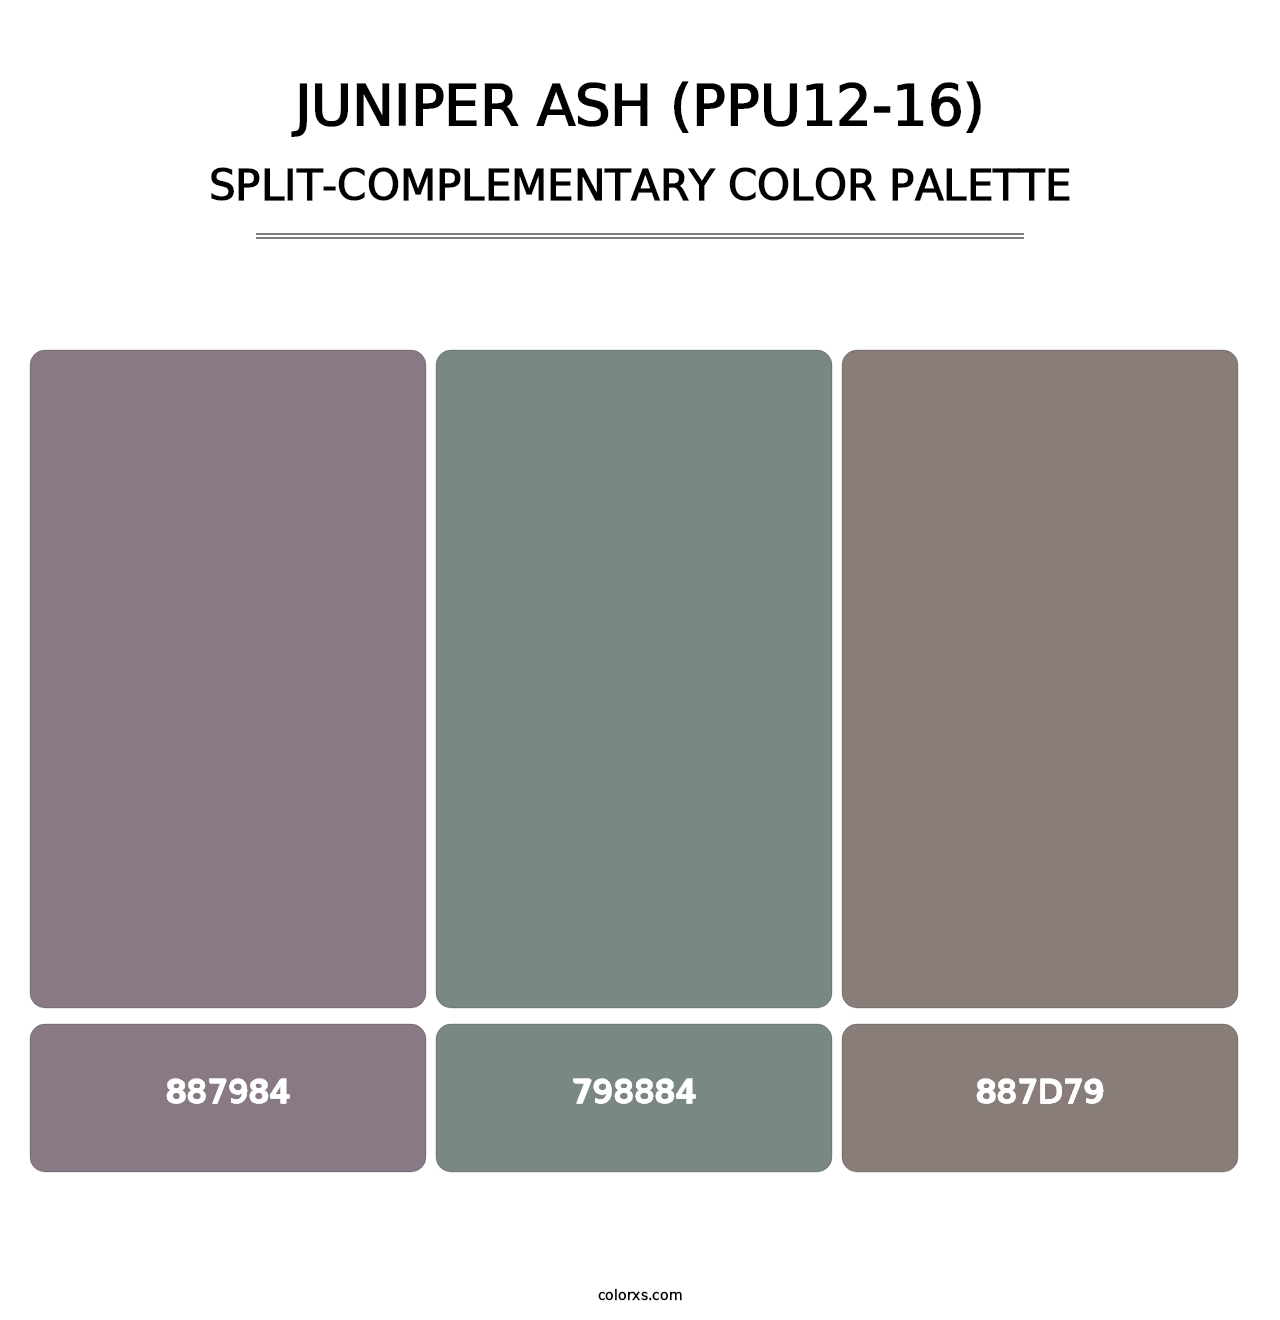 Juniper Ash (PPU12-16) - Split-Complementary Color Palette